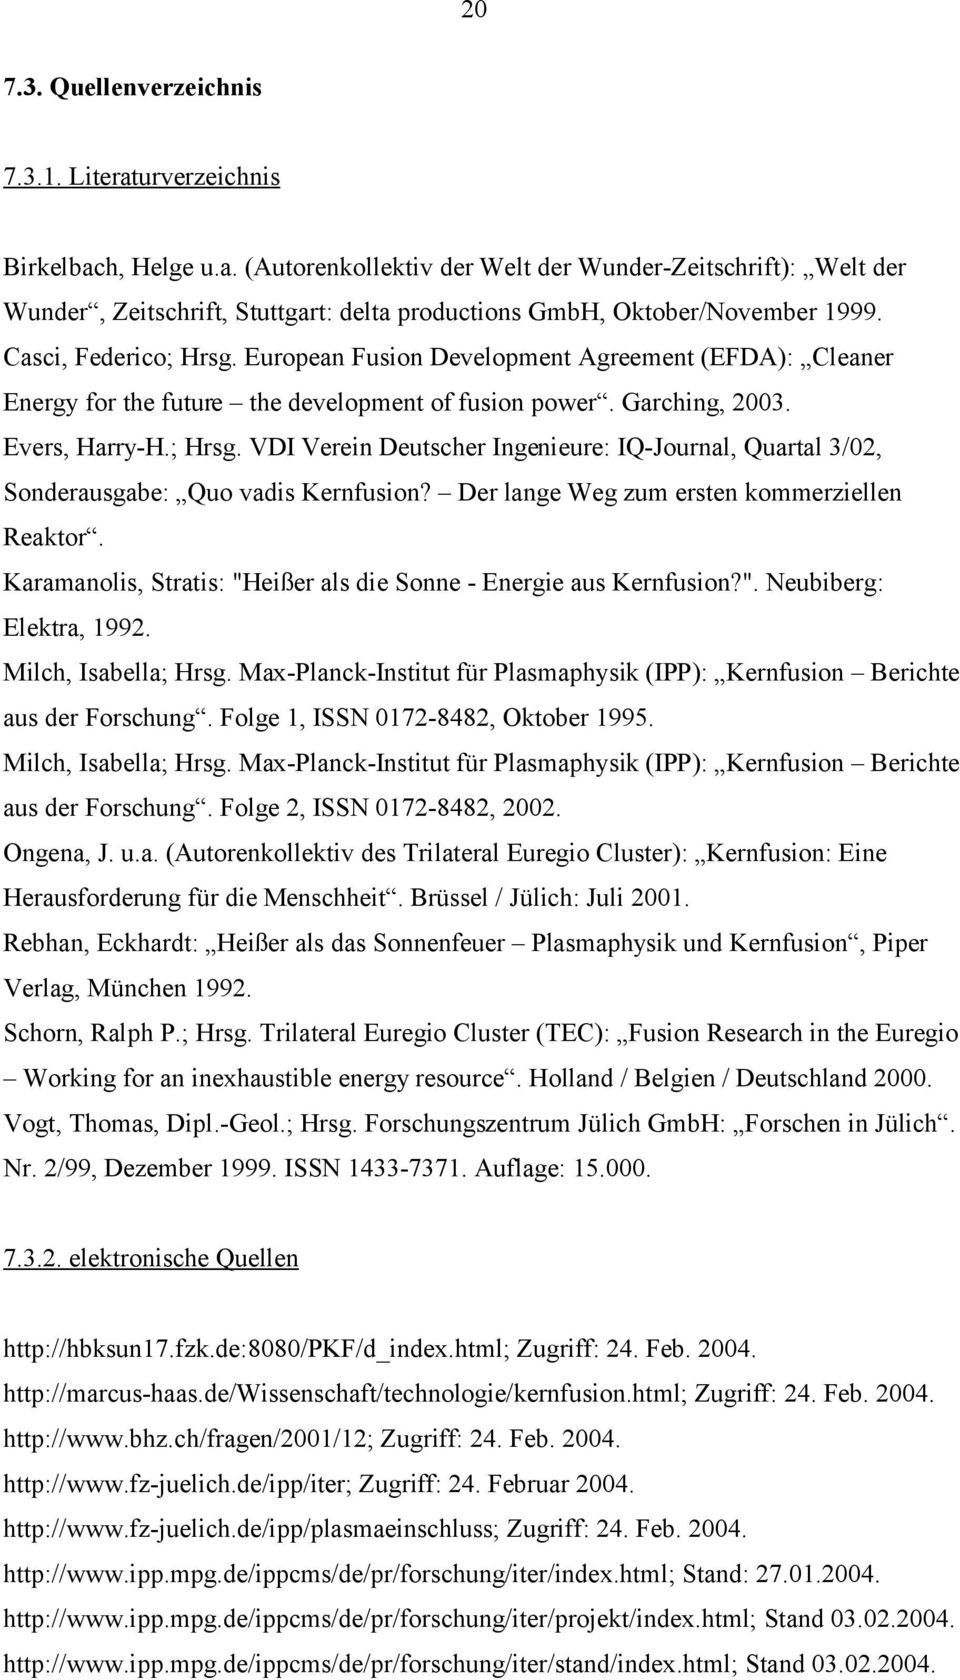 Der lange Weg zum ersten kommerziellen Reaktor. Karamanolis, Stratis: "Heißer als die Sonne - Energie aus Kernfusion?". Neubiberg: Elektra, 1992. Milch, Isabella; Hrsg.